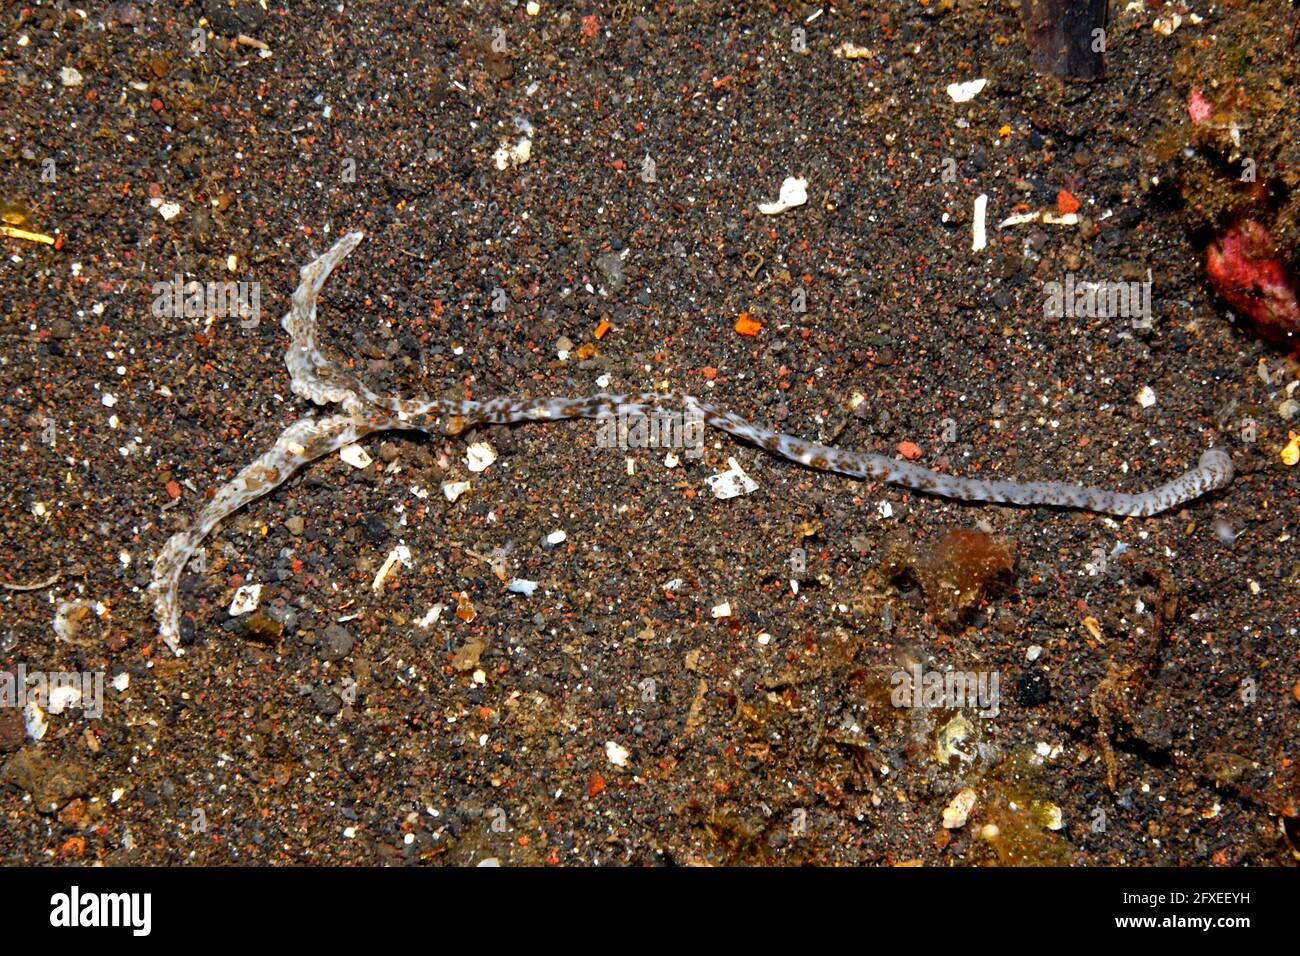 Löffel Wurm proboscis, oder Fütterungentakel, möglicherweise Bonellia sp. Tulamben, Bali, Indonesien. Bali Meer, Indischer Ozean Stockfoto